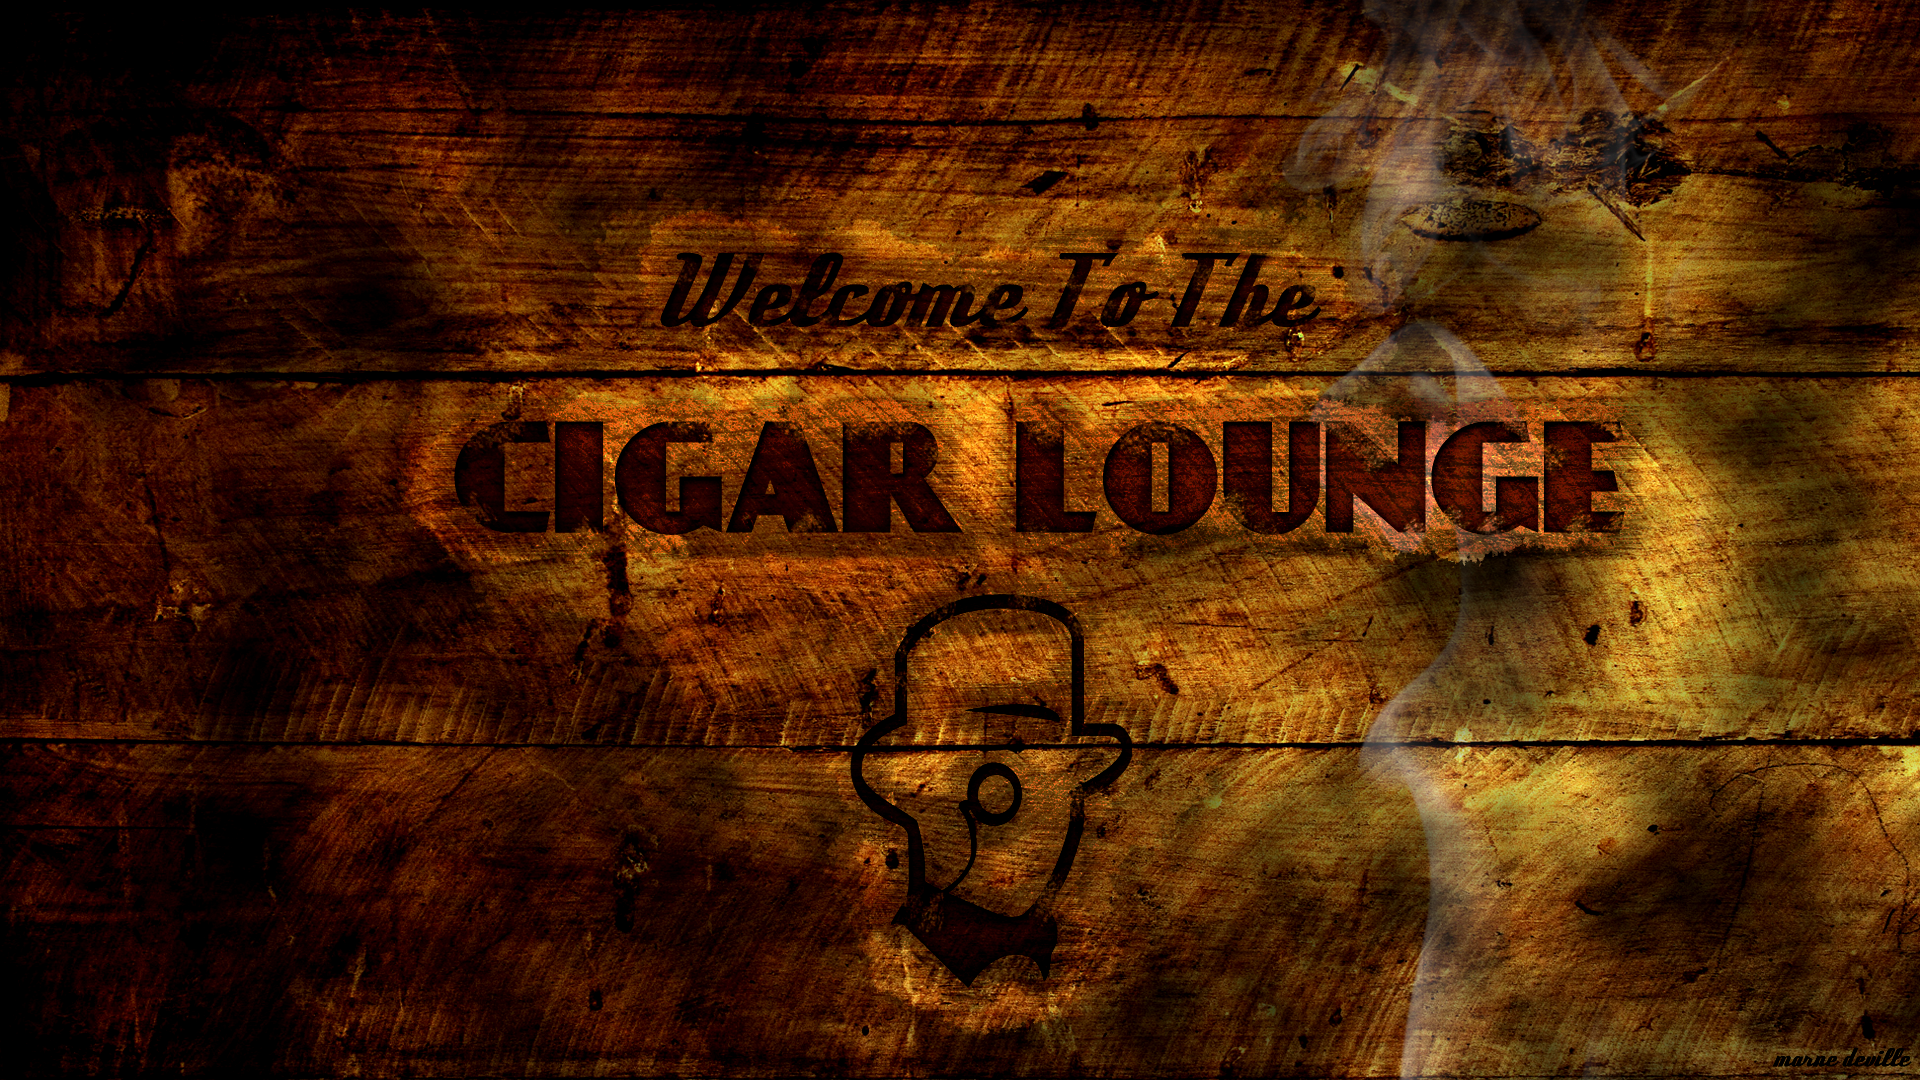 EVE Online - Gents Cigar Lounge Promo